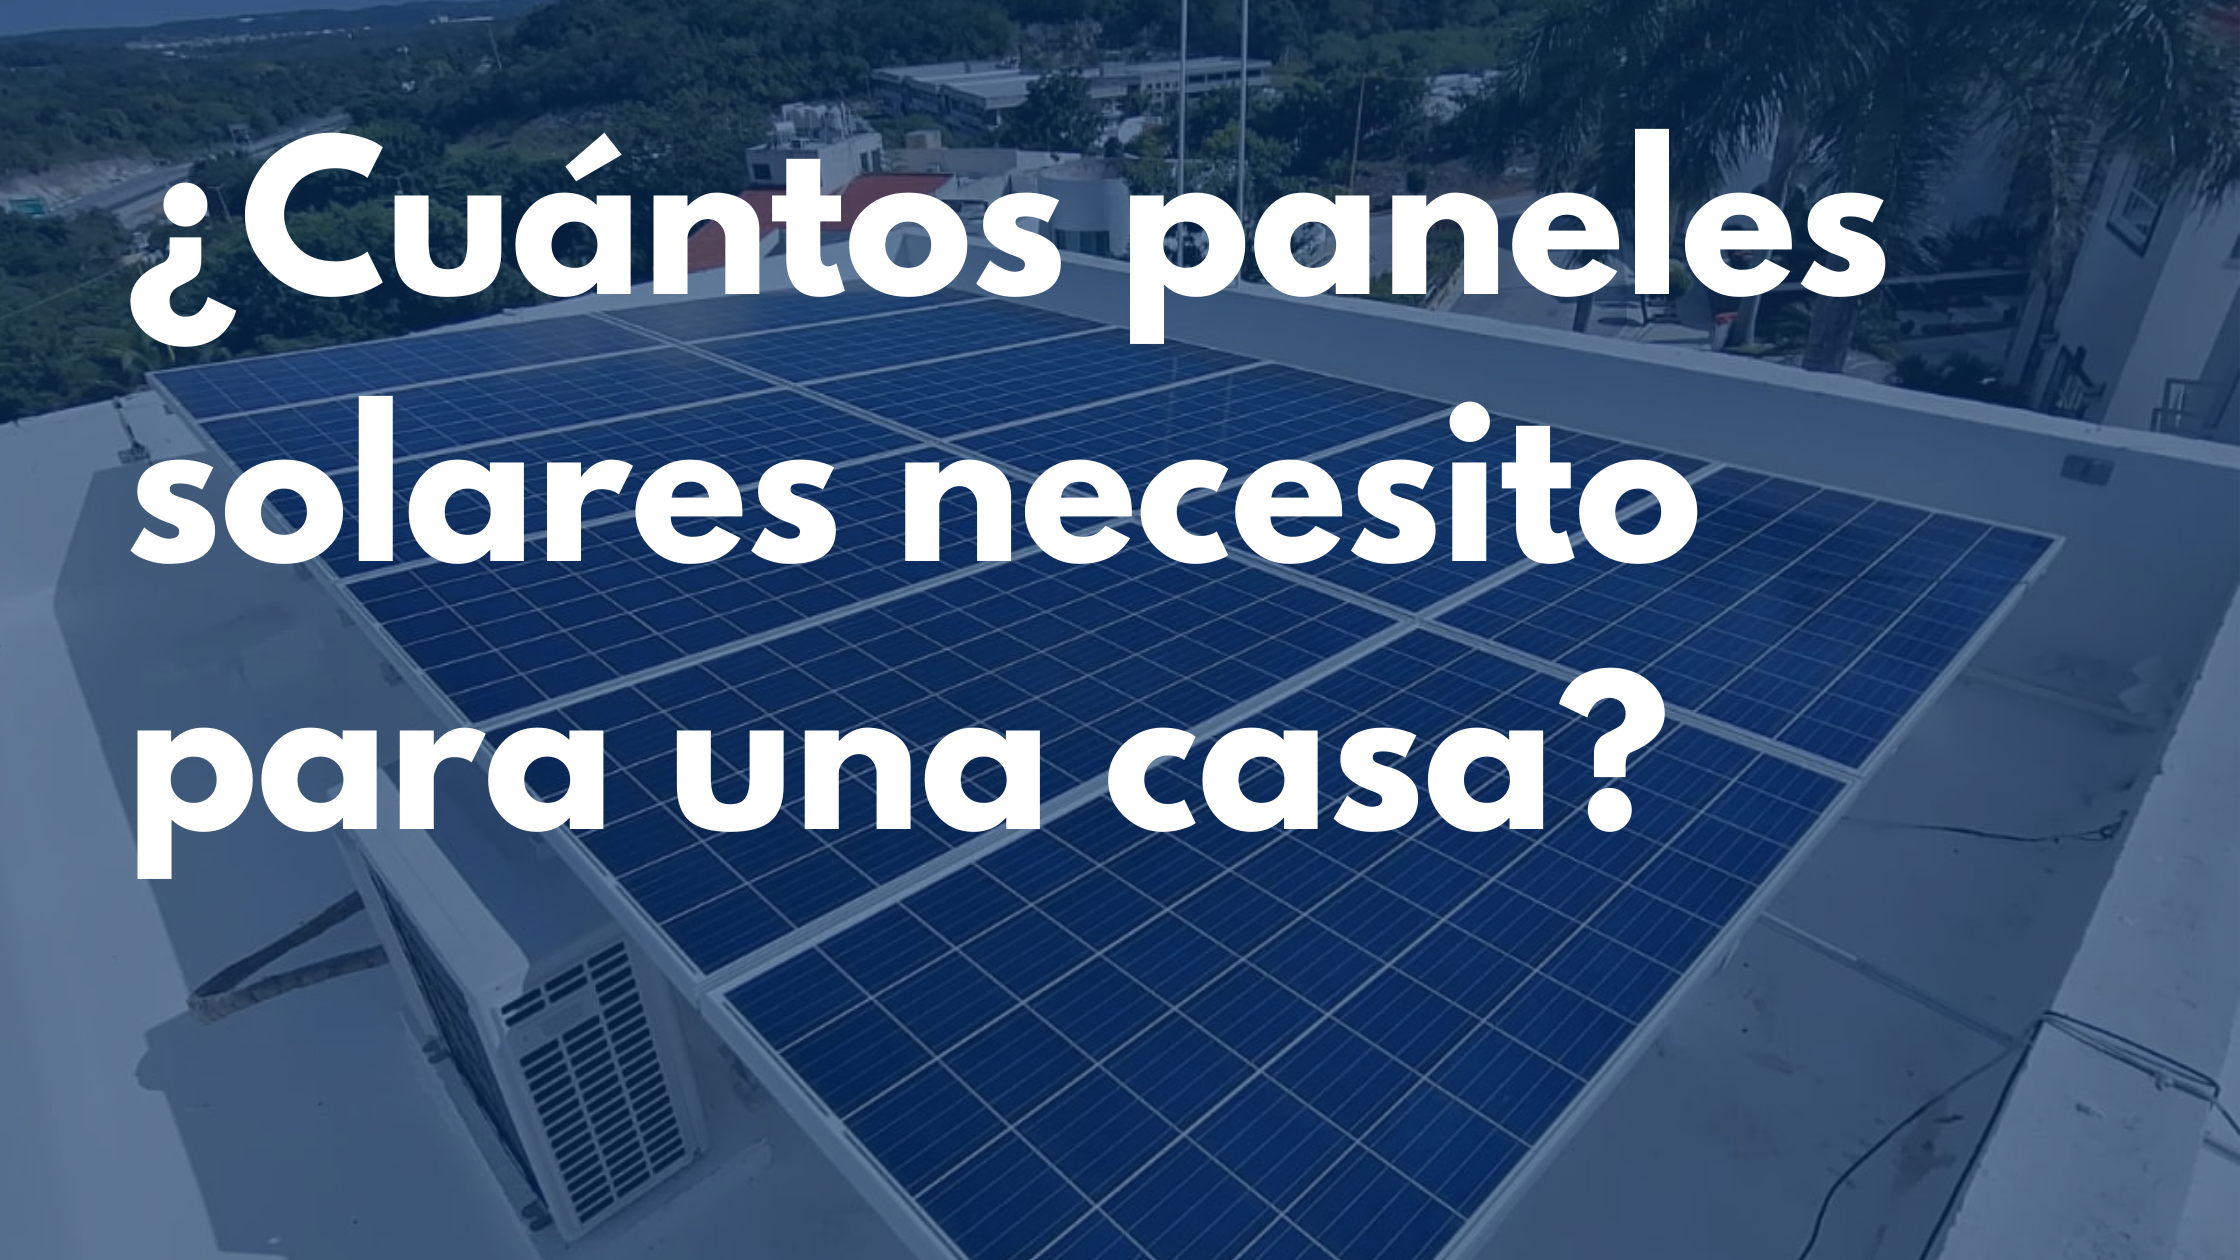 ¿Cuántos paneles solares se necesitan para generar 1 kW?